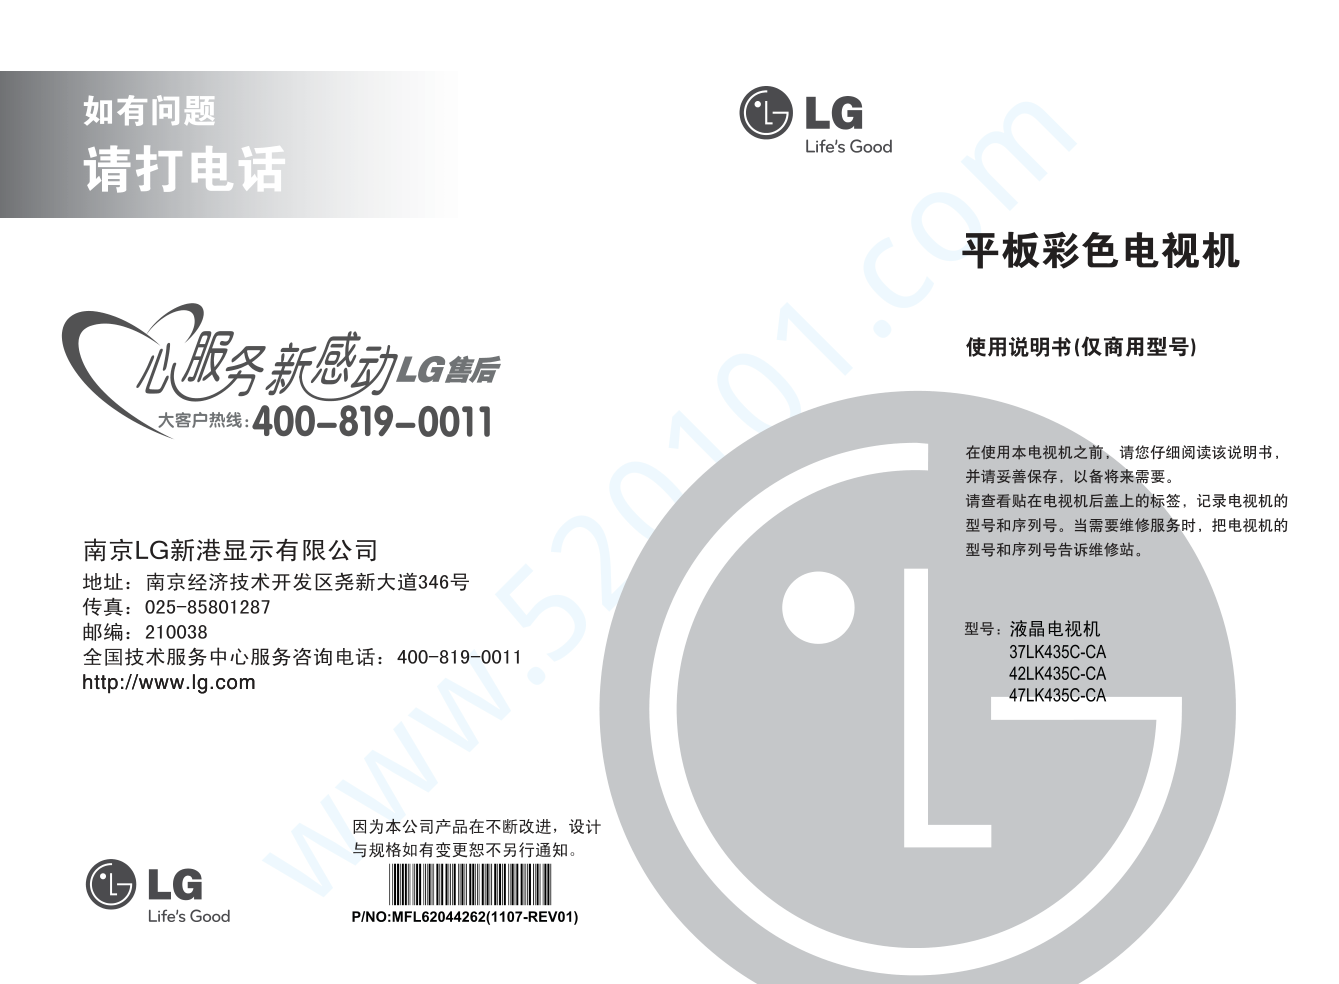 LG 37LK435C-CA液晶电视说明书-0